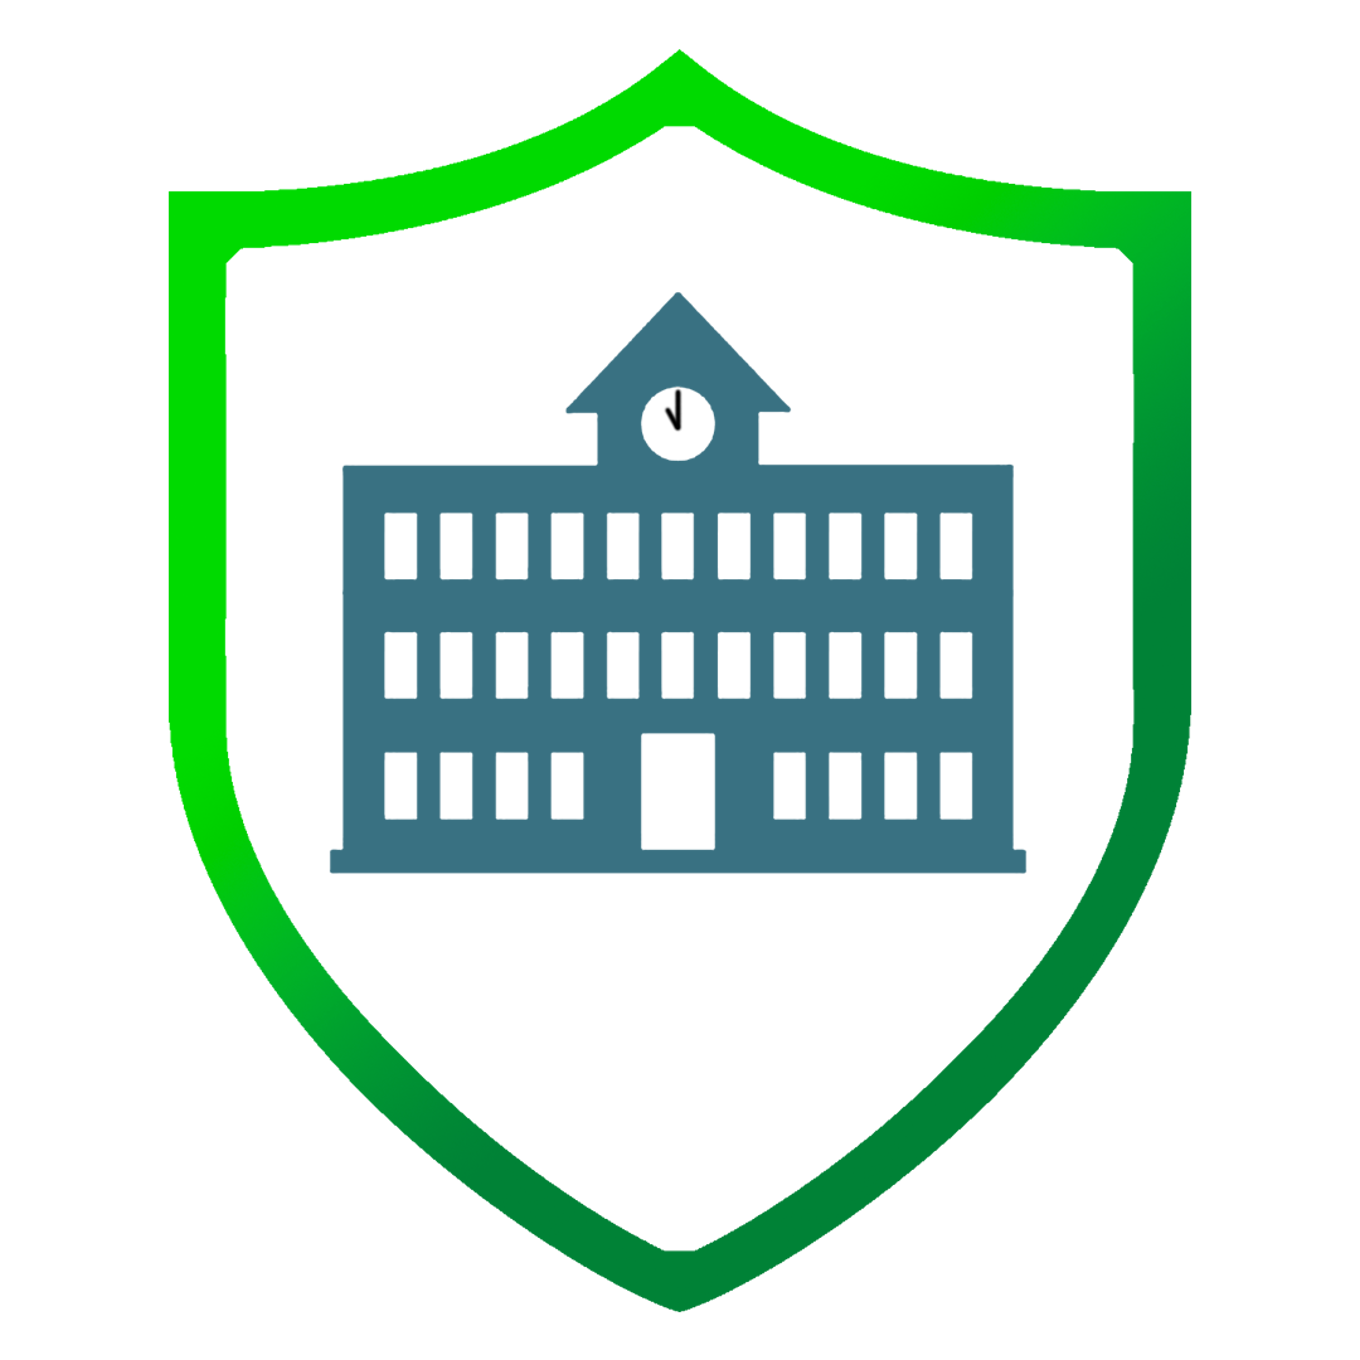 Tietosuojattu koulu -hankkeen logo.